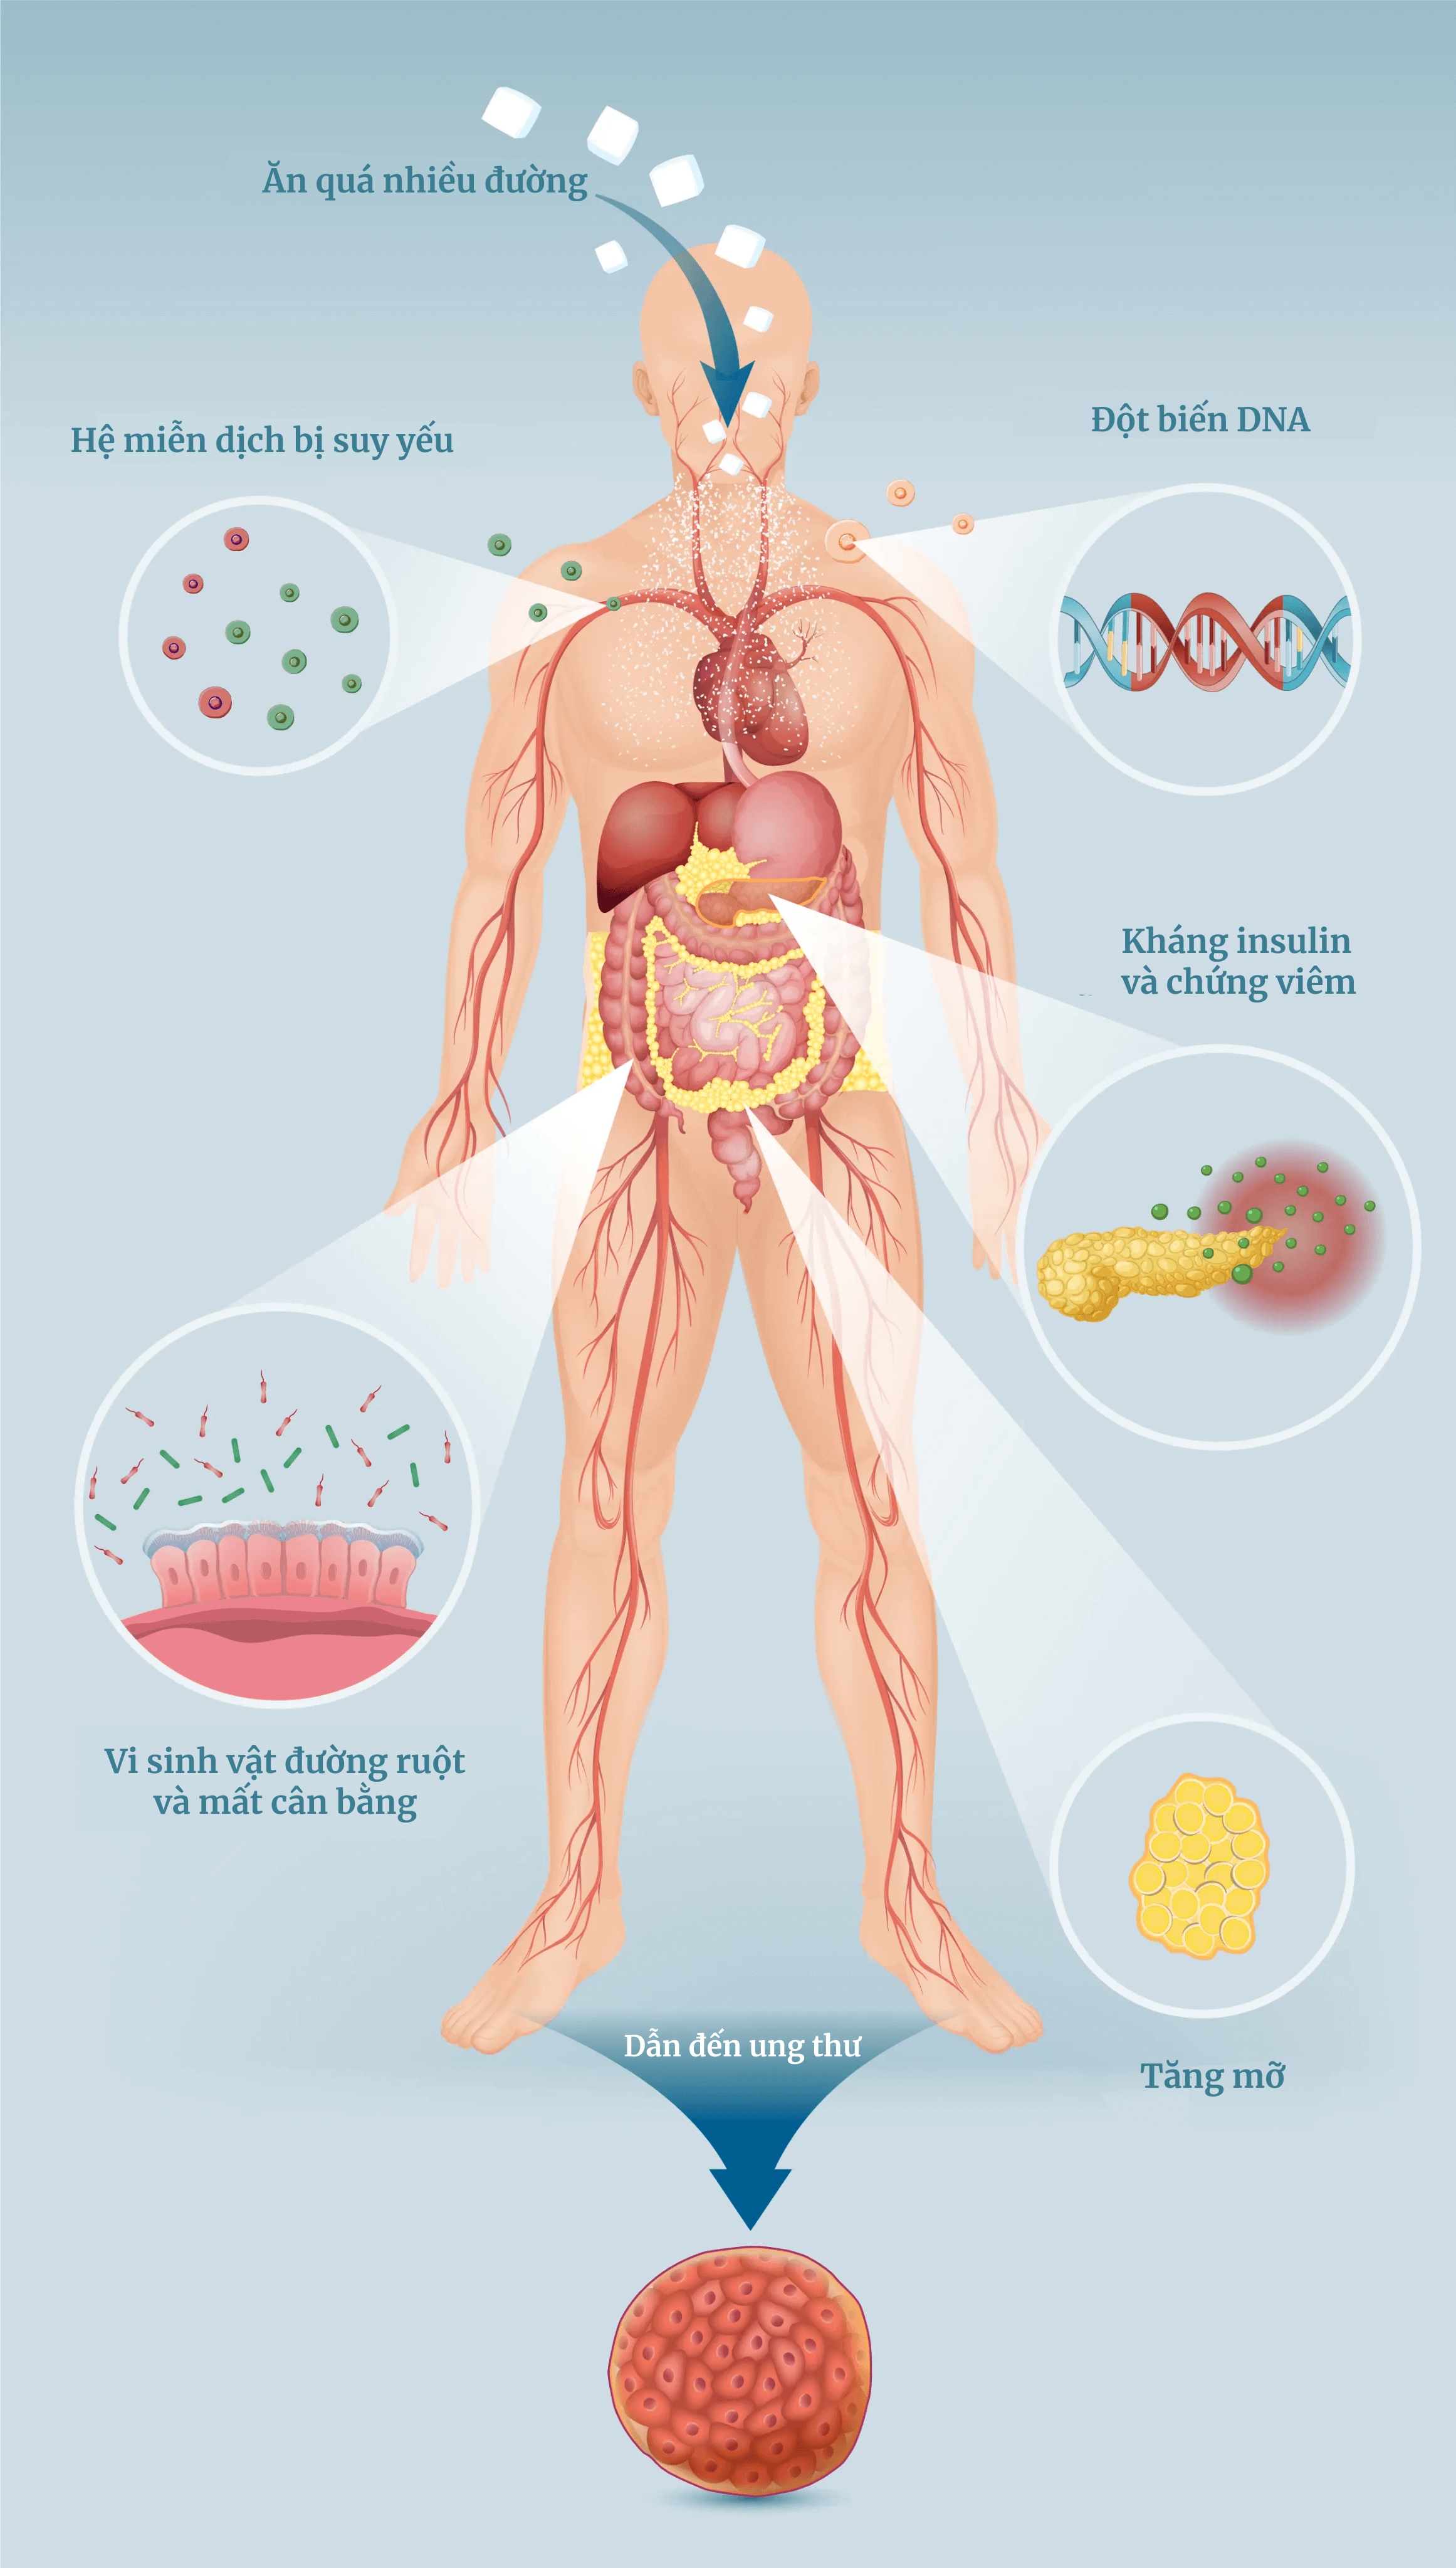 Đường gây ra nhiều thay đổi trong cơ thể mà cuối cùng dẫn đến tăng nguy cơ ung thư. (Ảnh minh họa của The Epoch Times, Shutterstock)